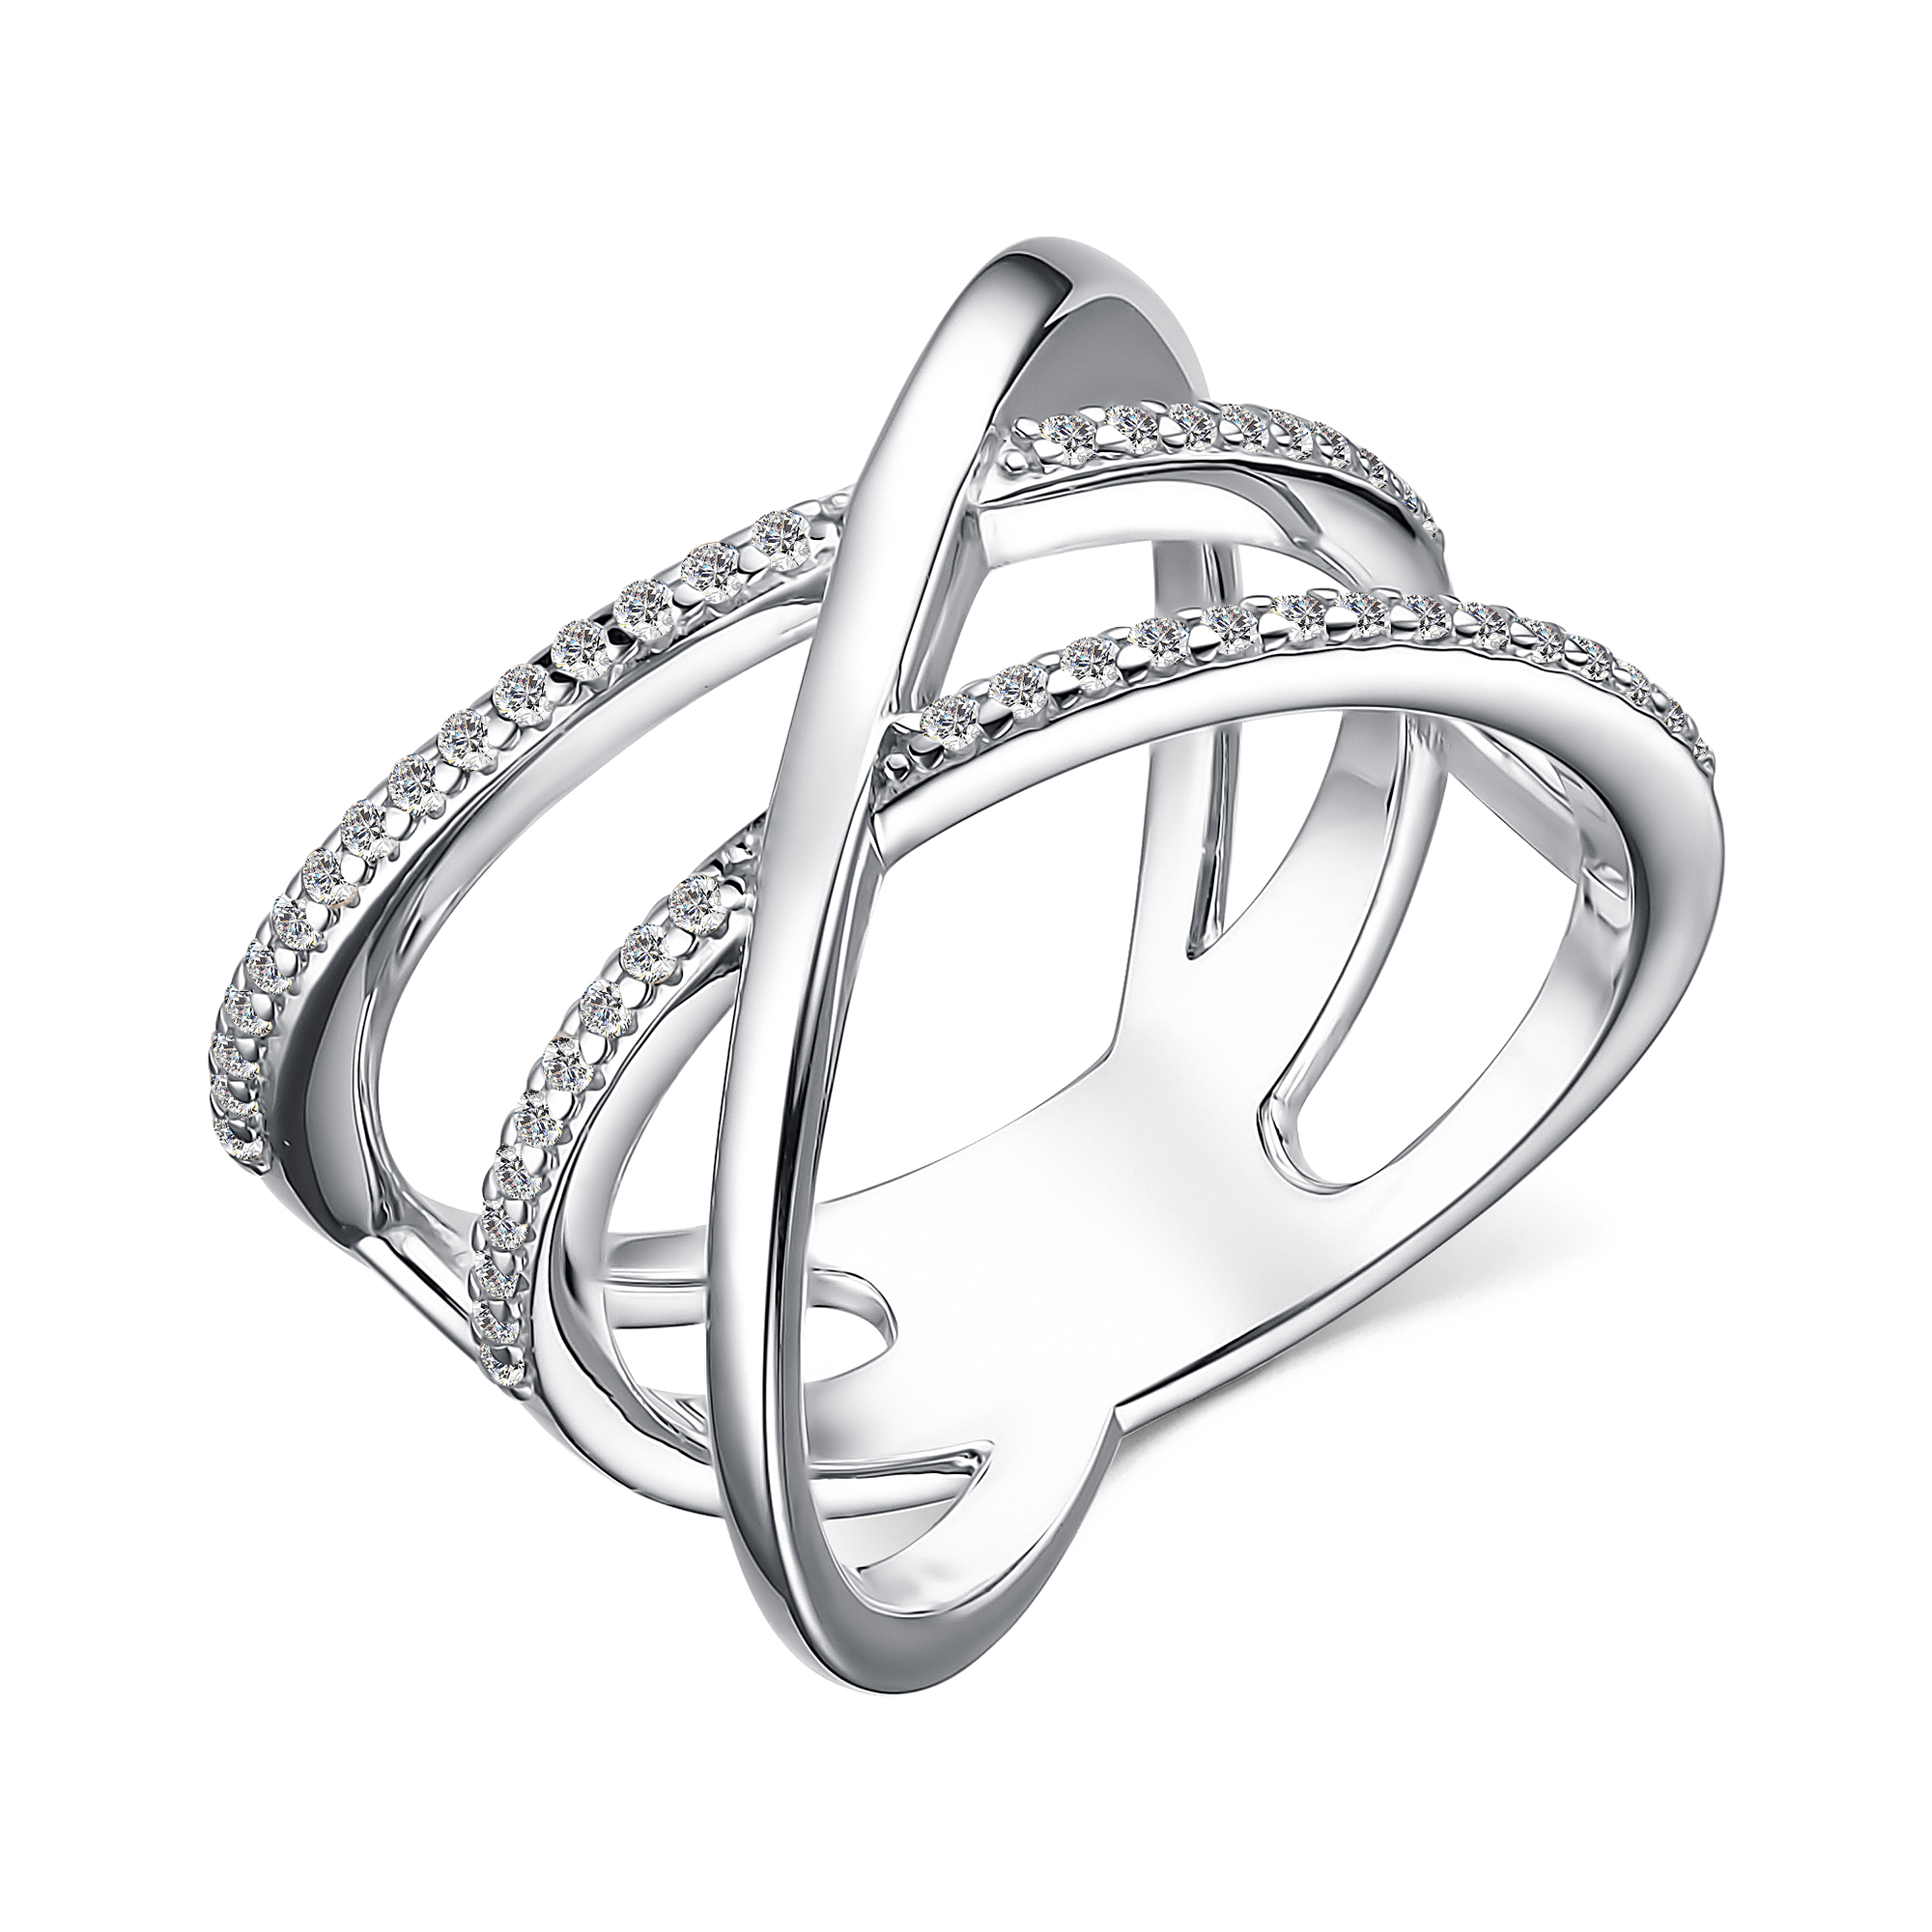 Двойное кольцо Санлайт серебро